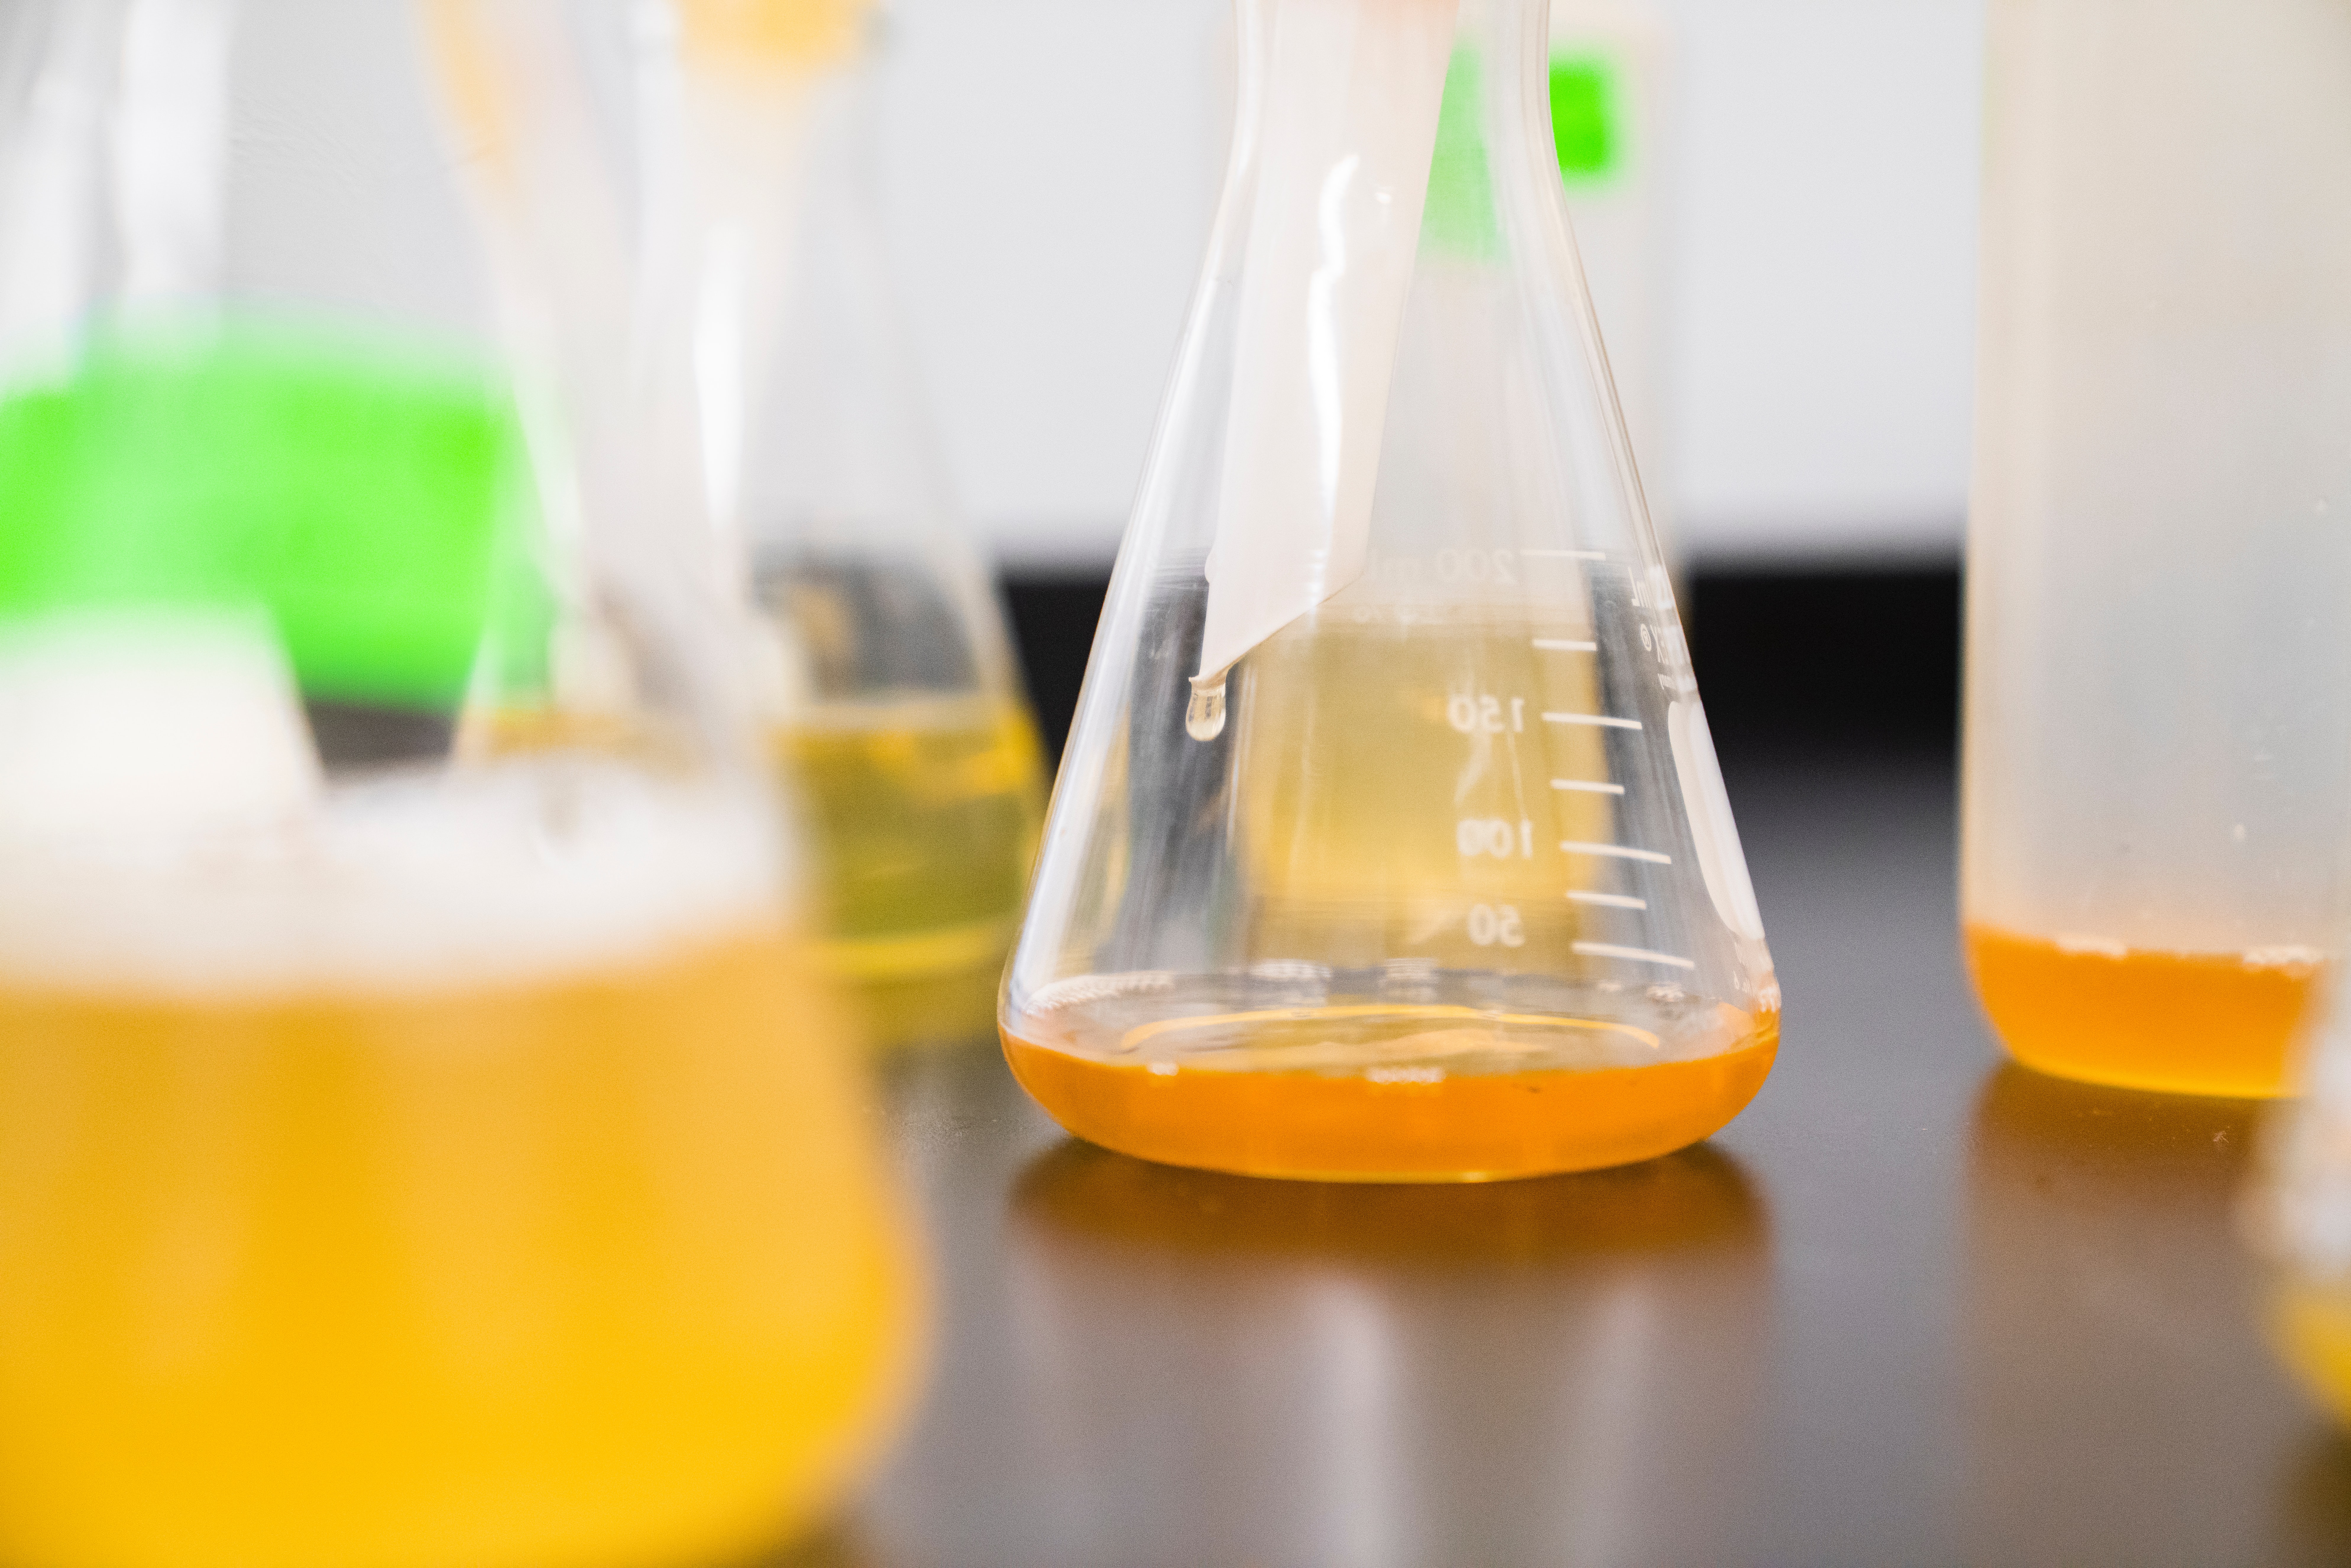 Beakers in a lab bench containing orange liquid